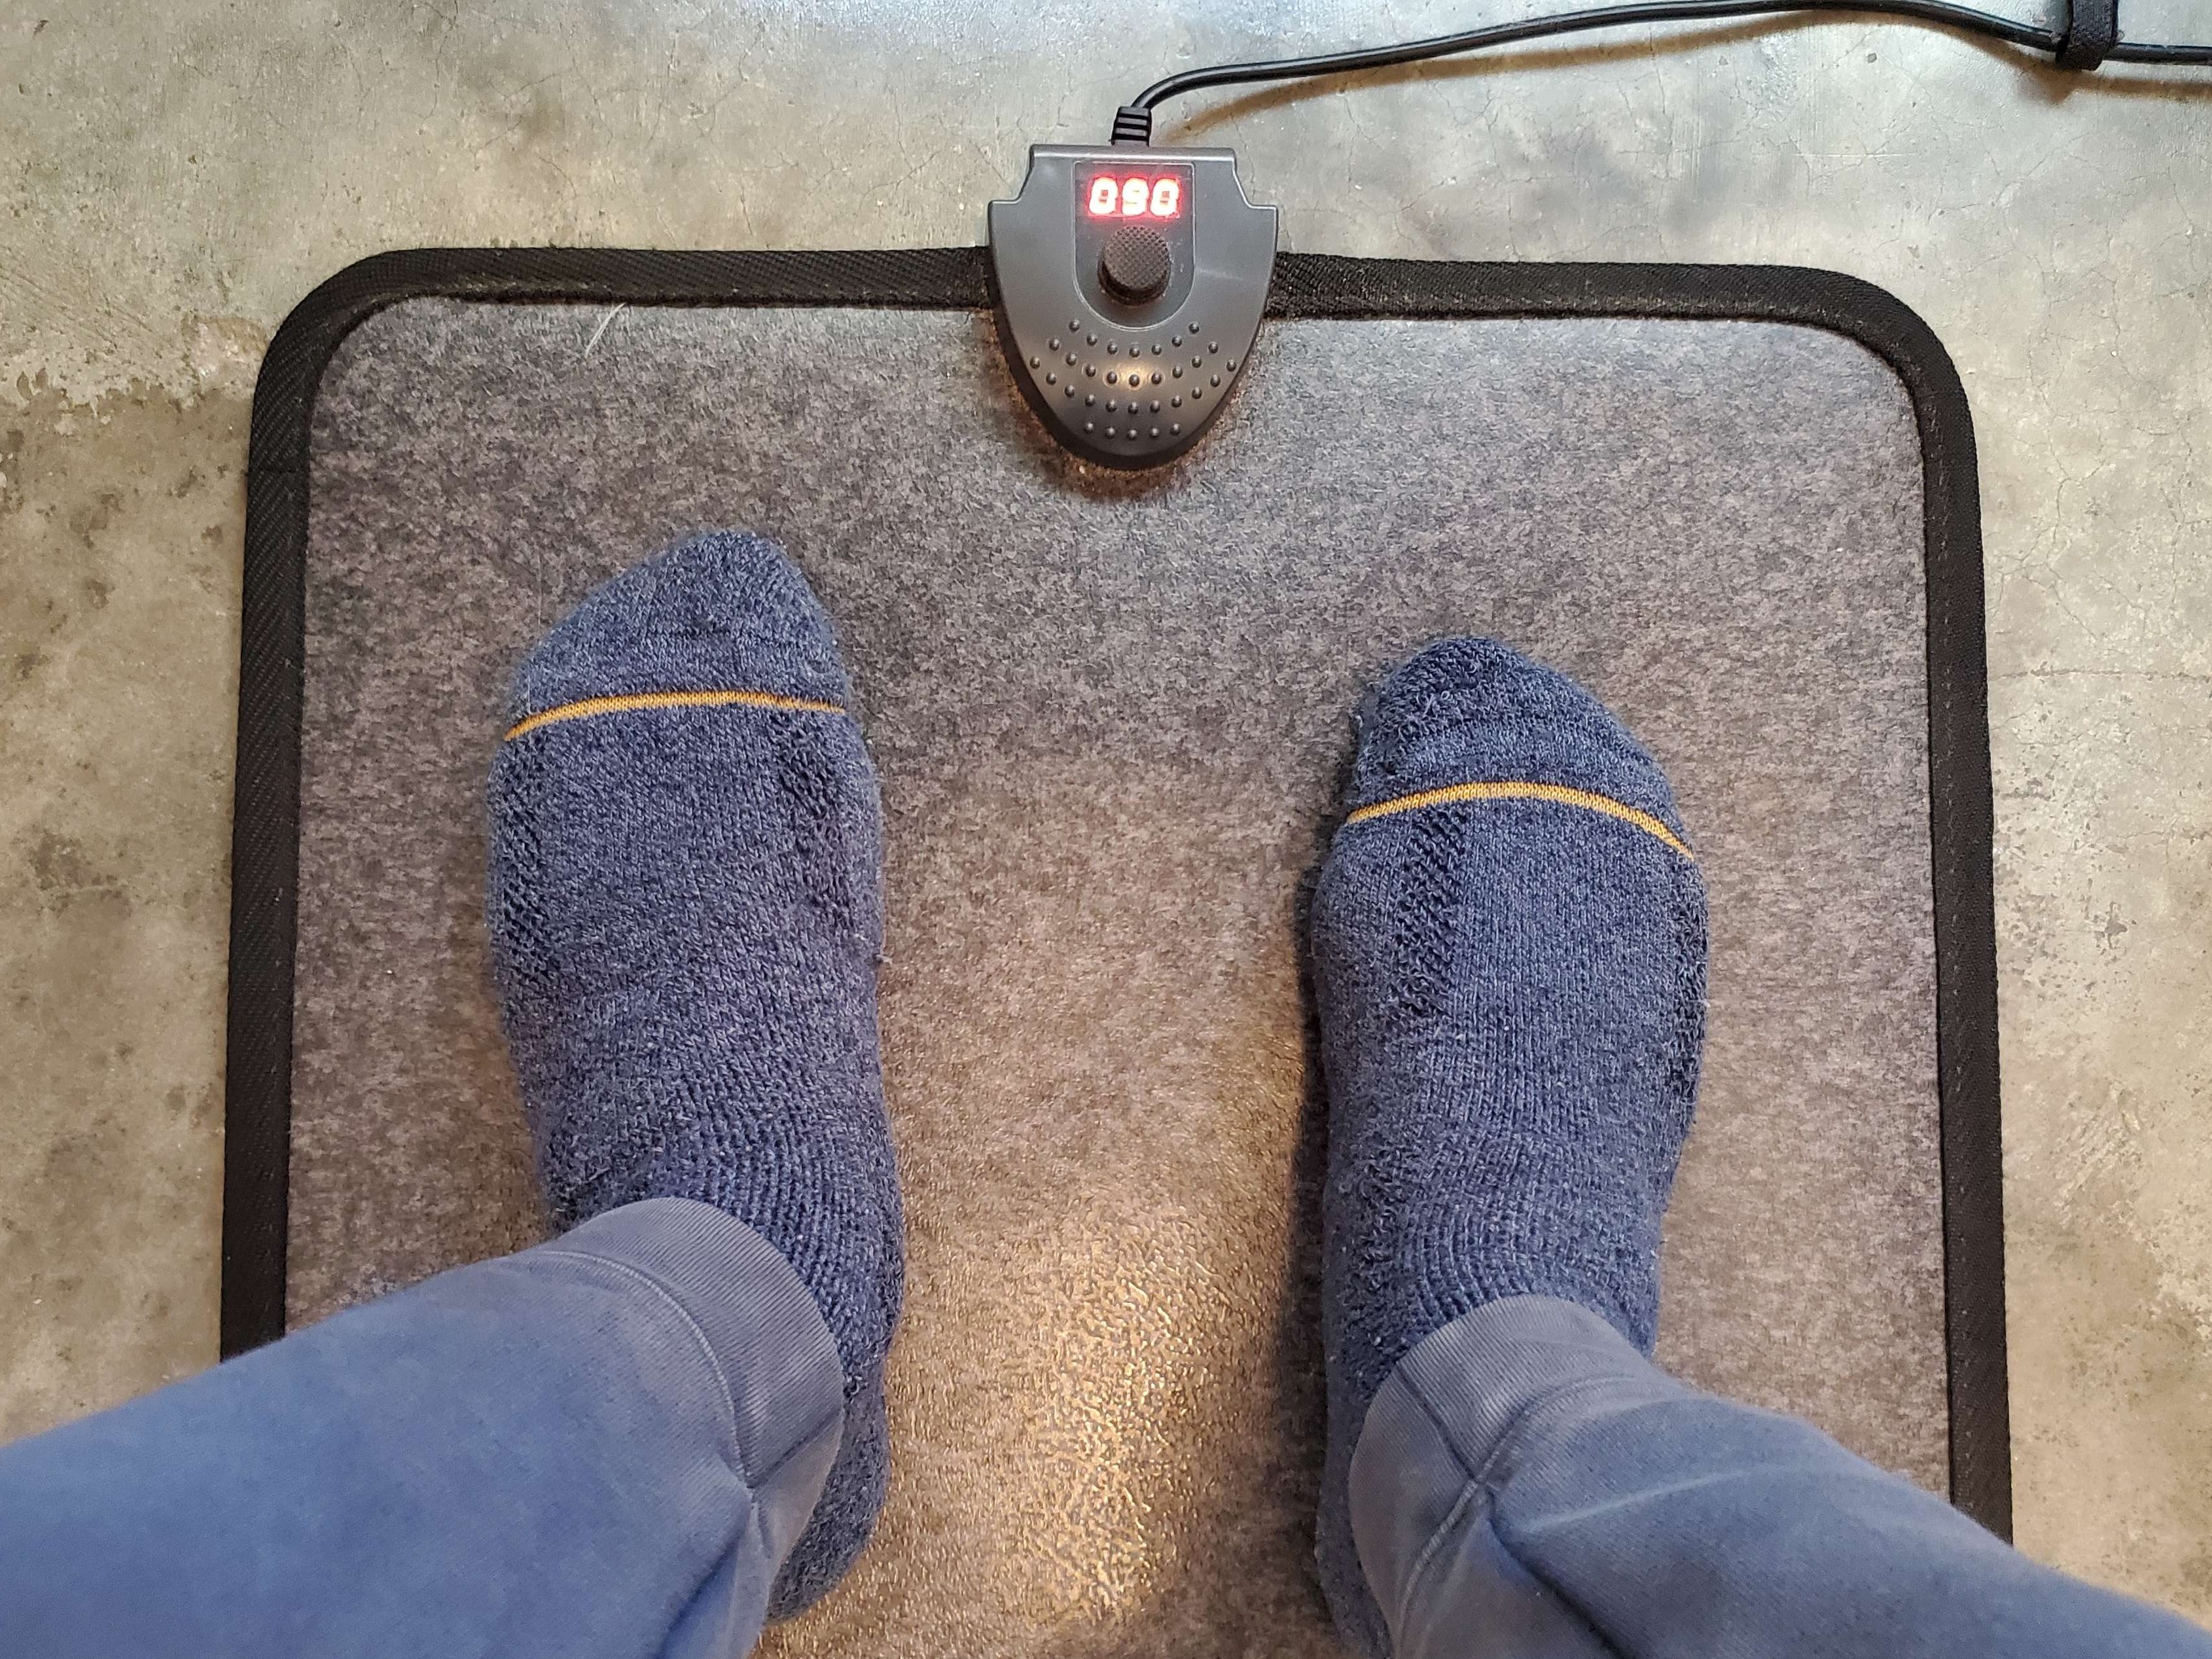 Heated Foot Warmer, Heated Floor Mats